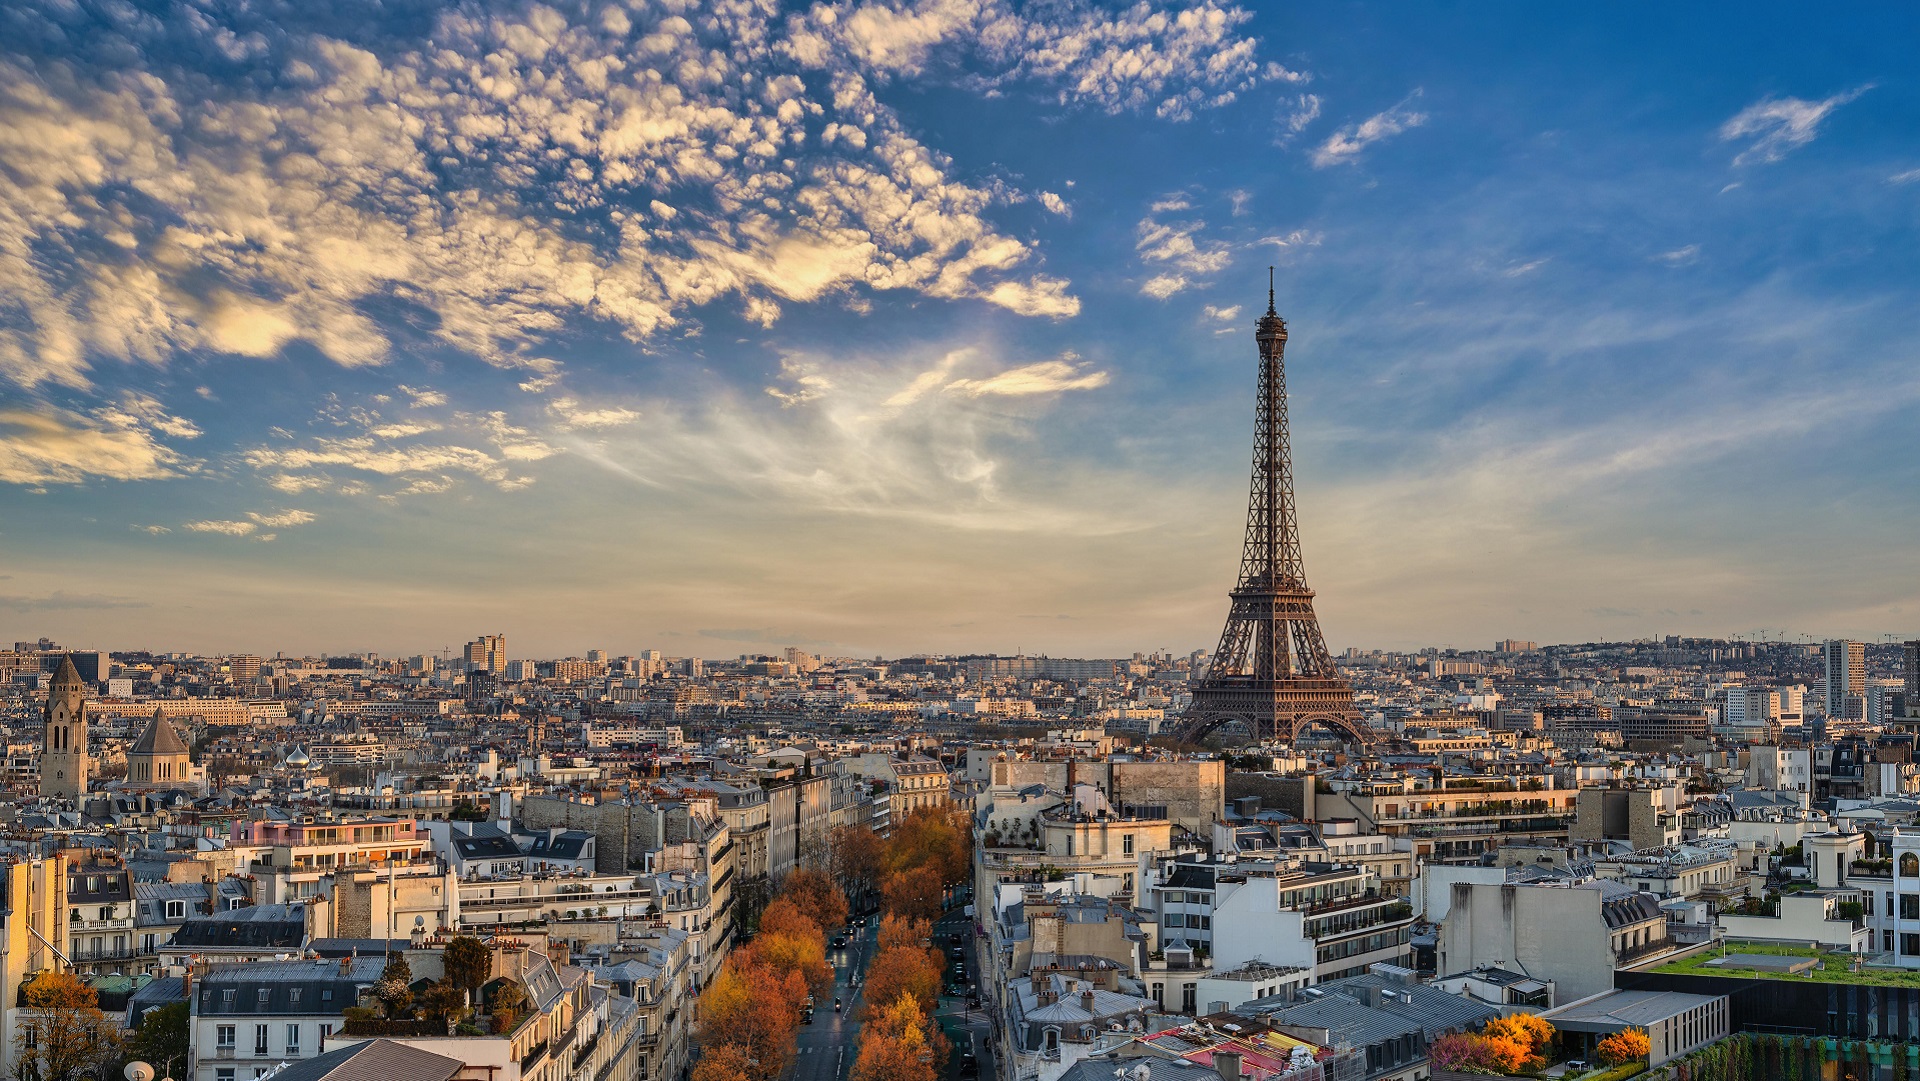 Stadtansicht von Paris mit Eiffelturm | picture alliance / Zoonar